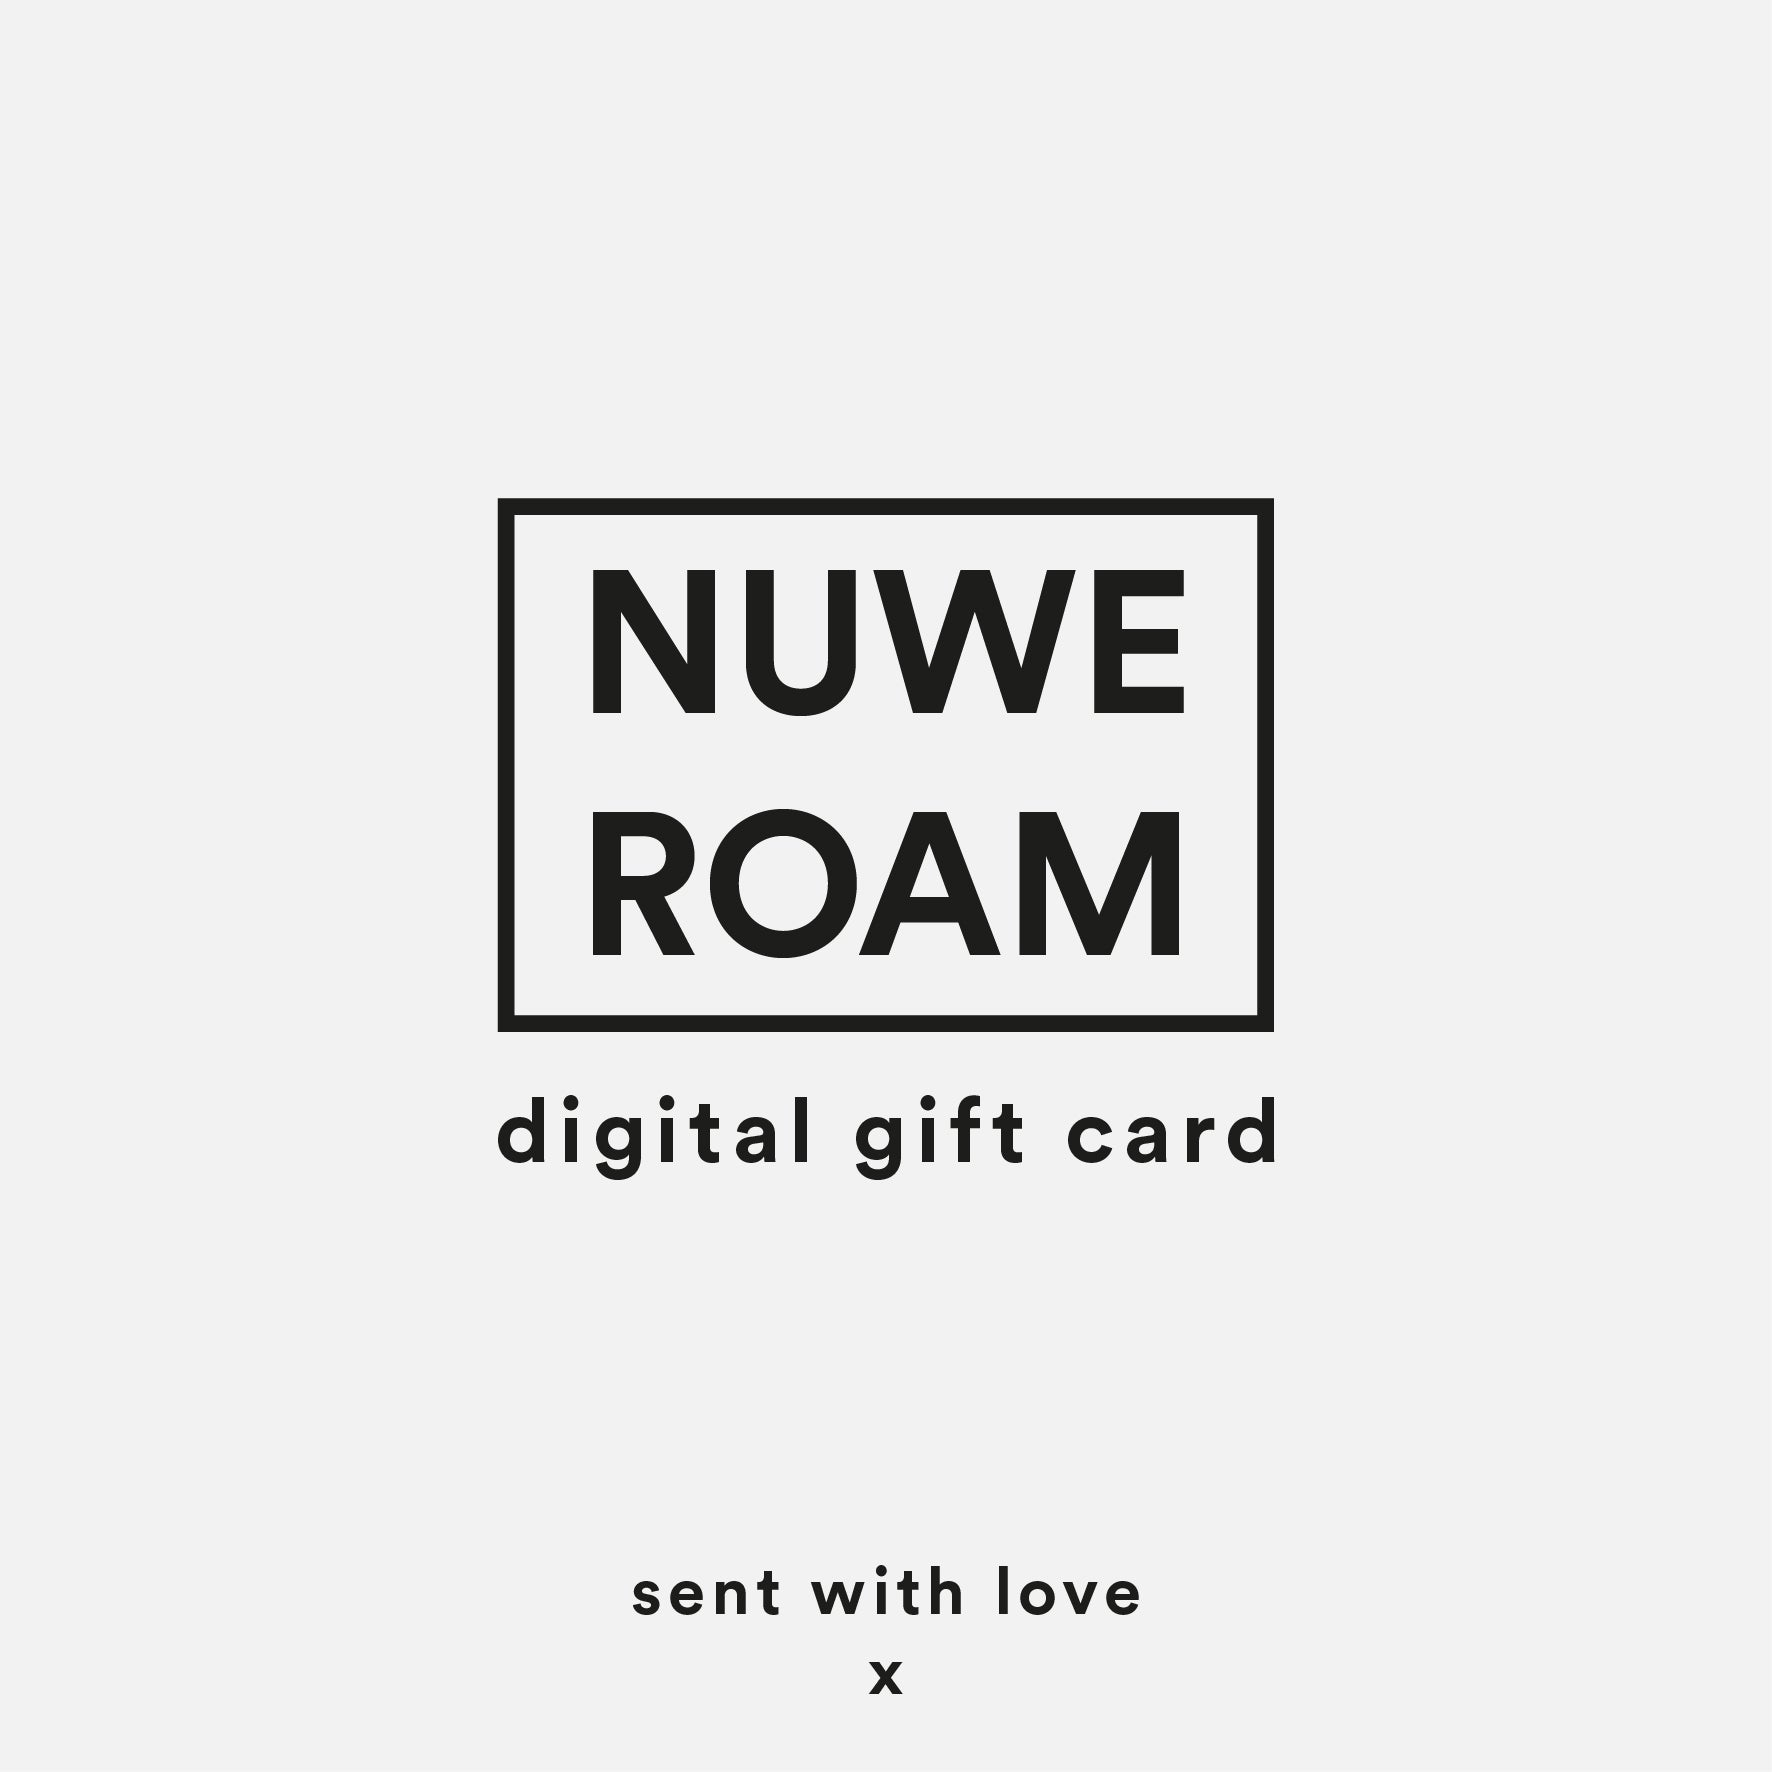 NUWE ROAM DIGITAL GIFT CARD